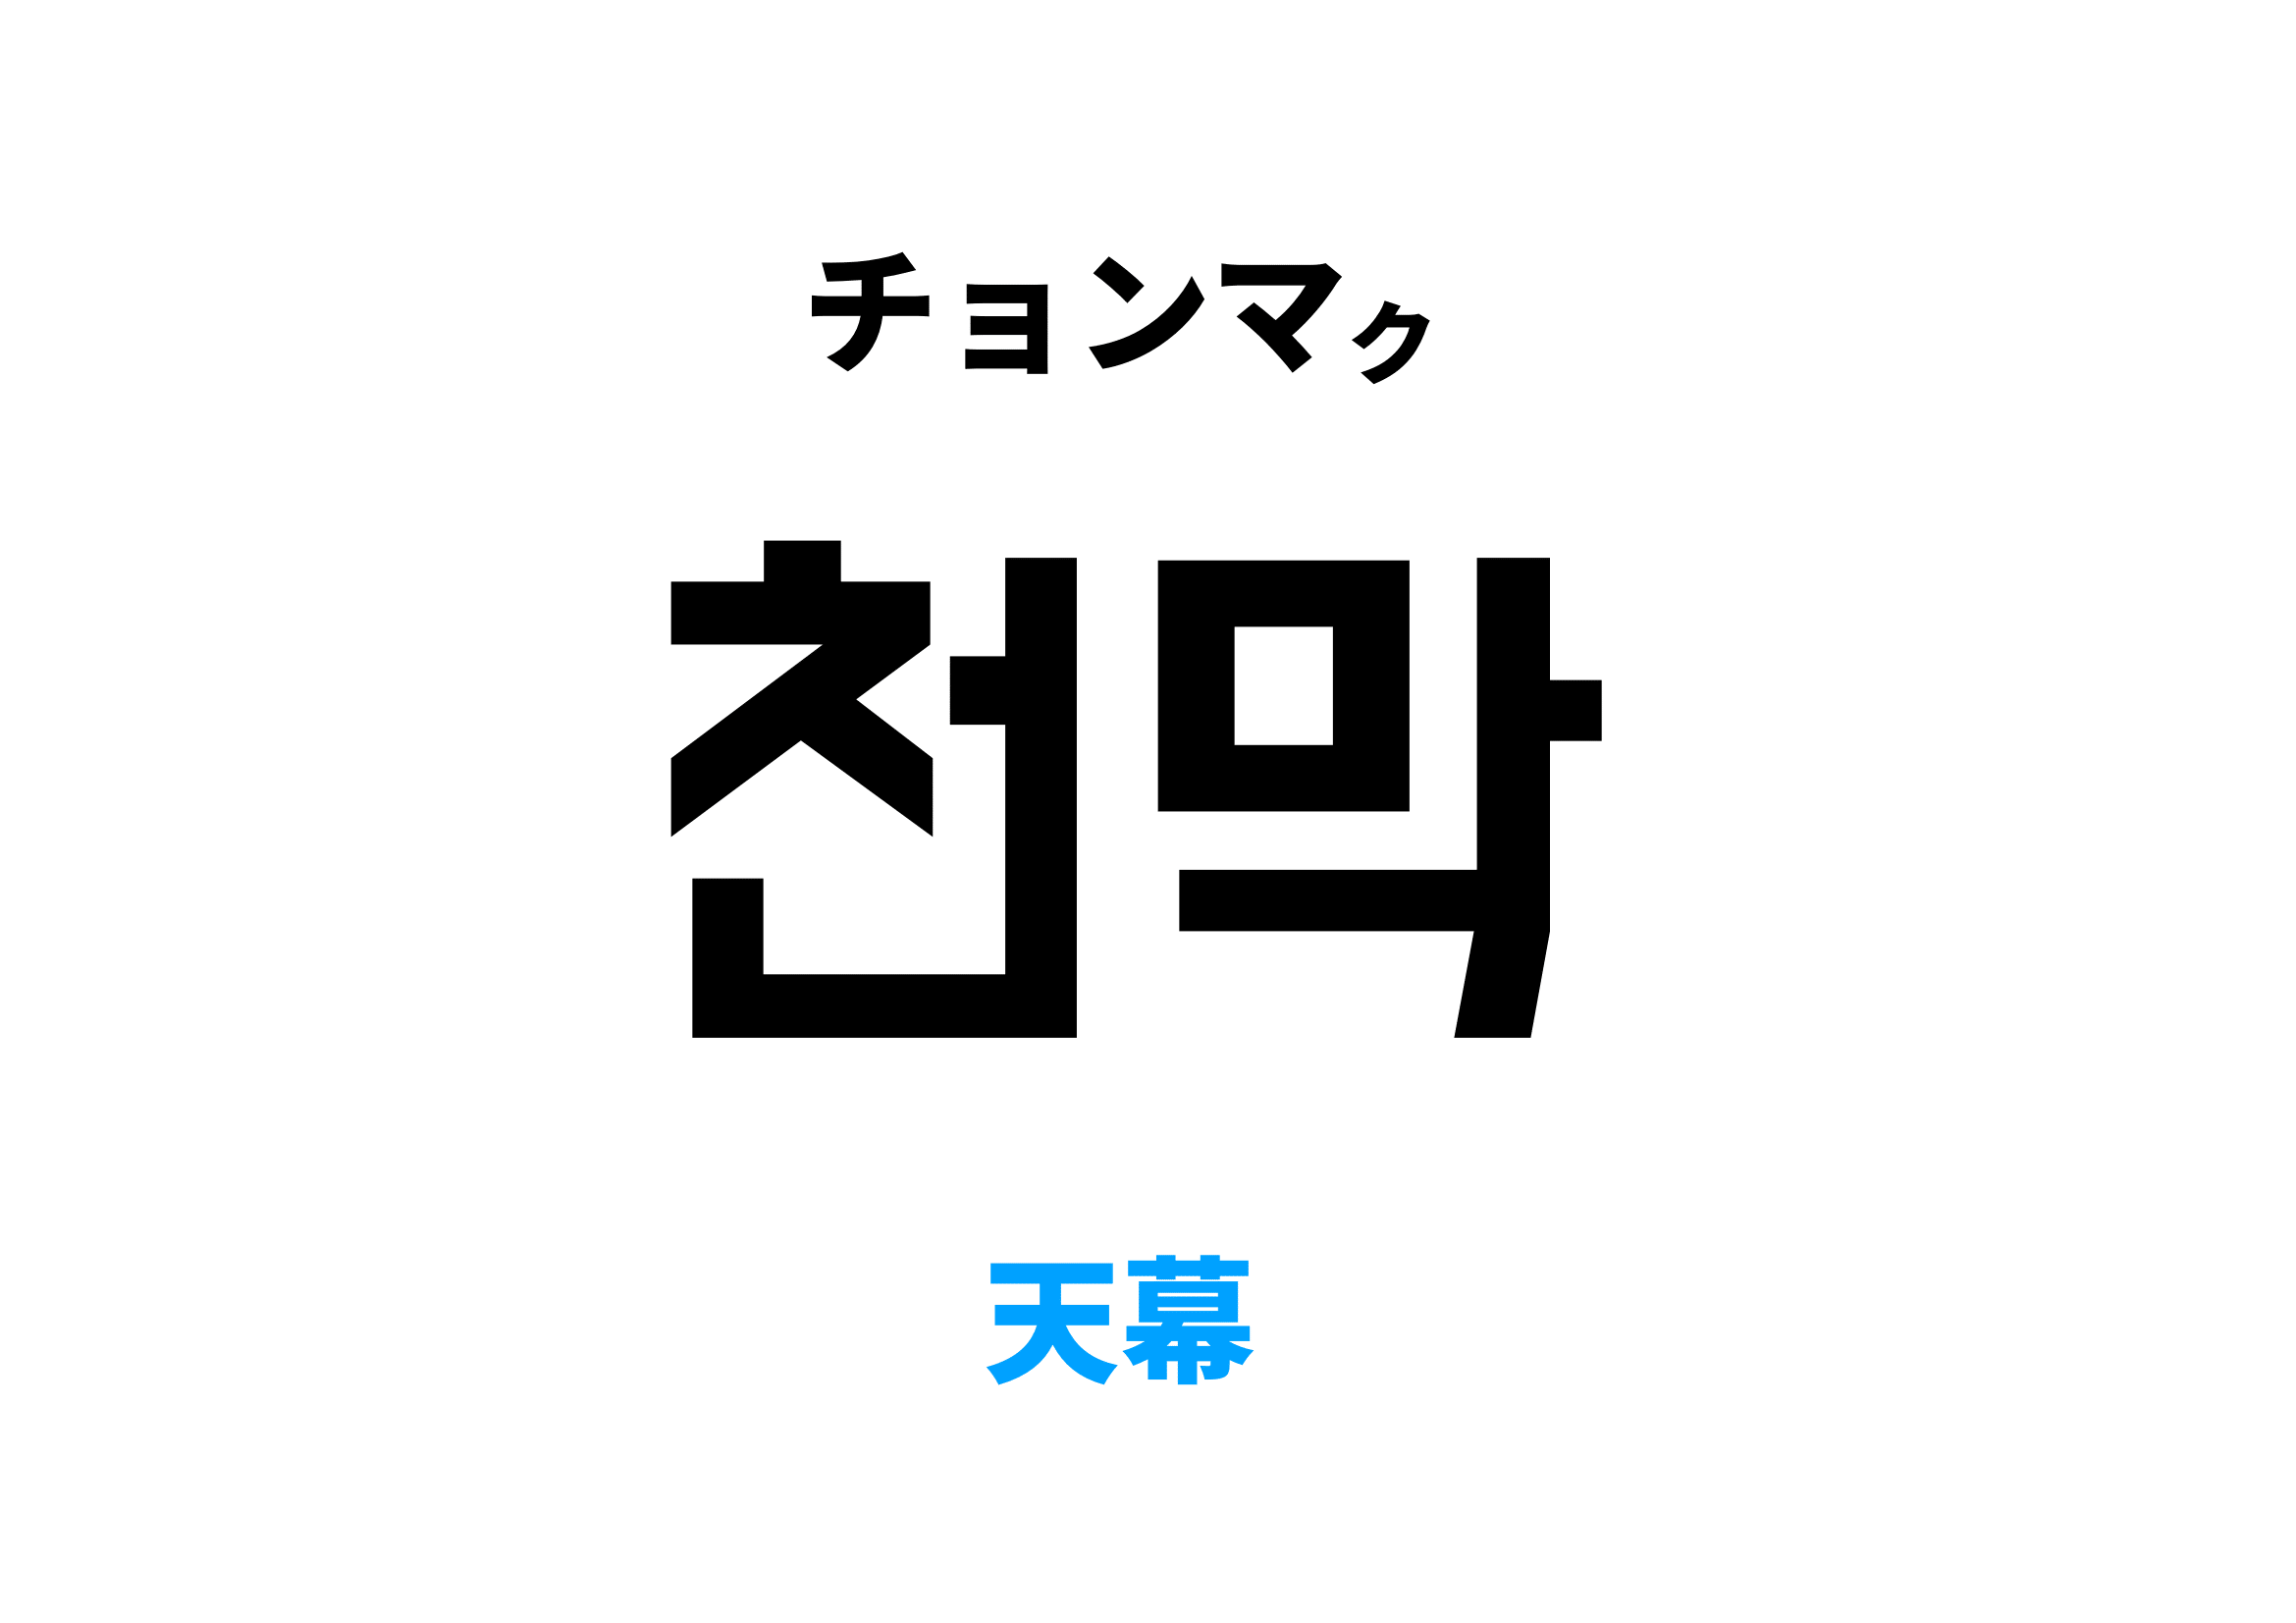 韓国語で天幕 [천막]の意味と発音を学ぼう